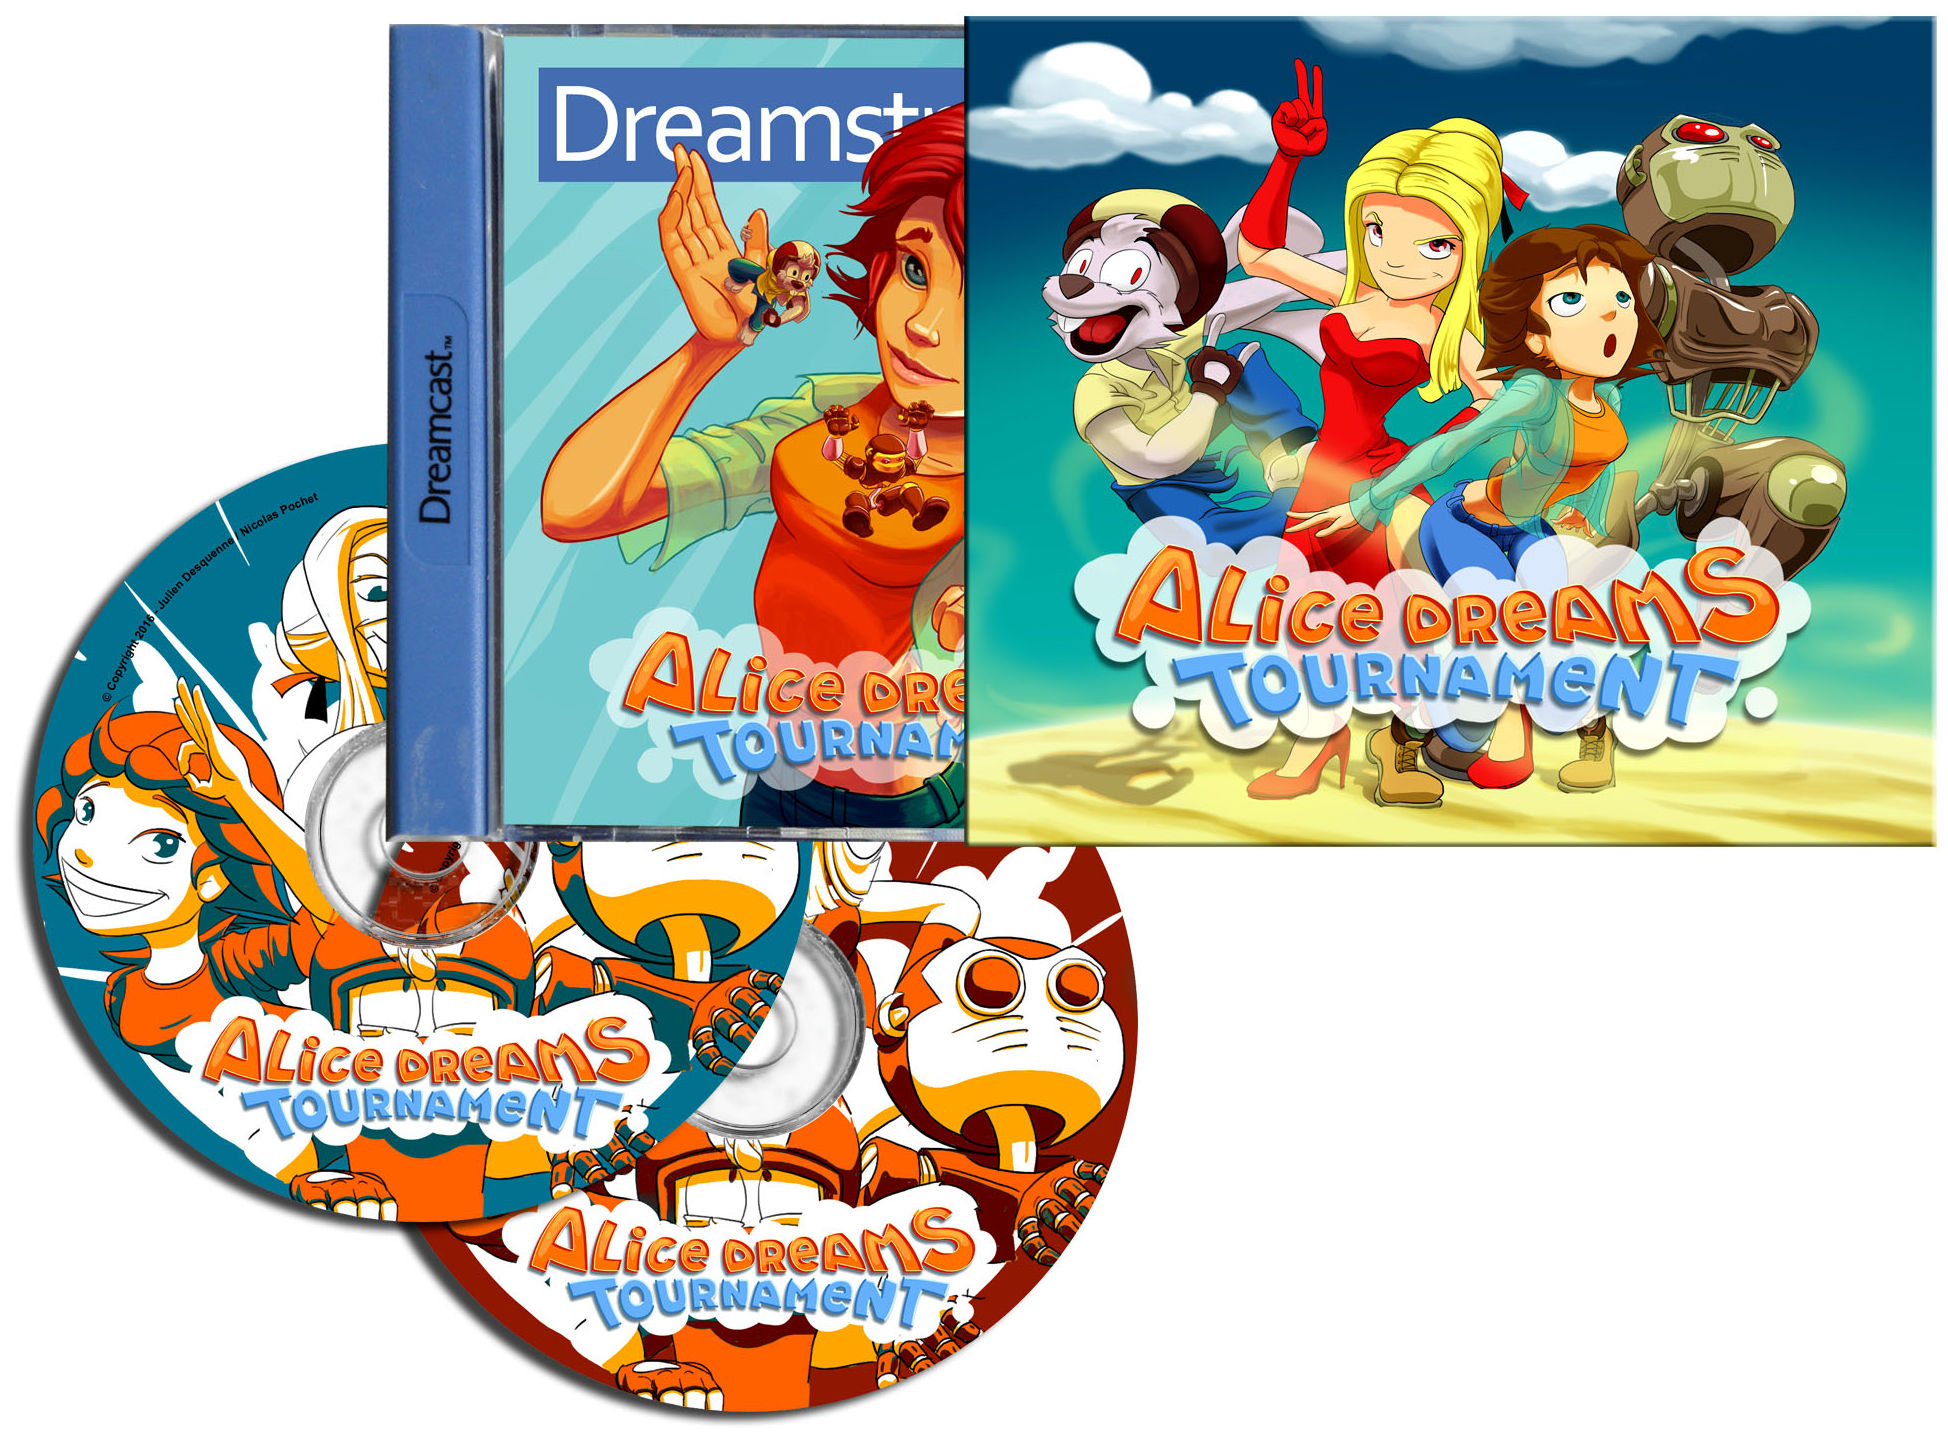 Alice Dreams Dreamcast game